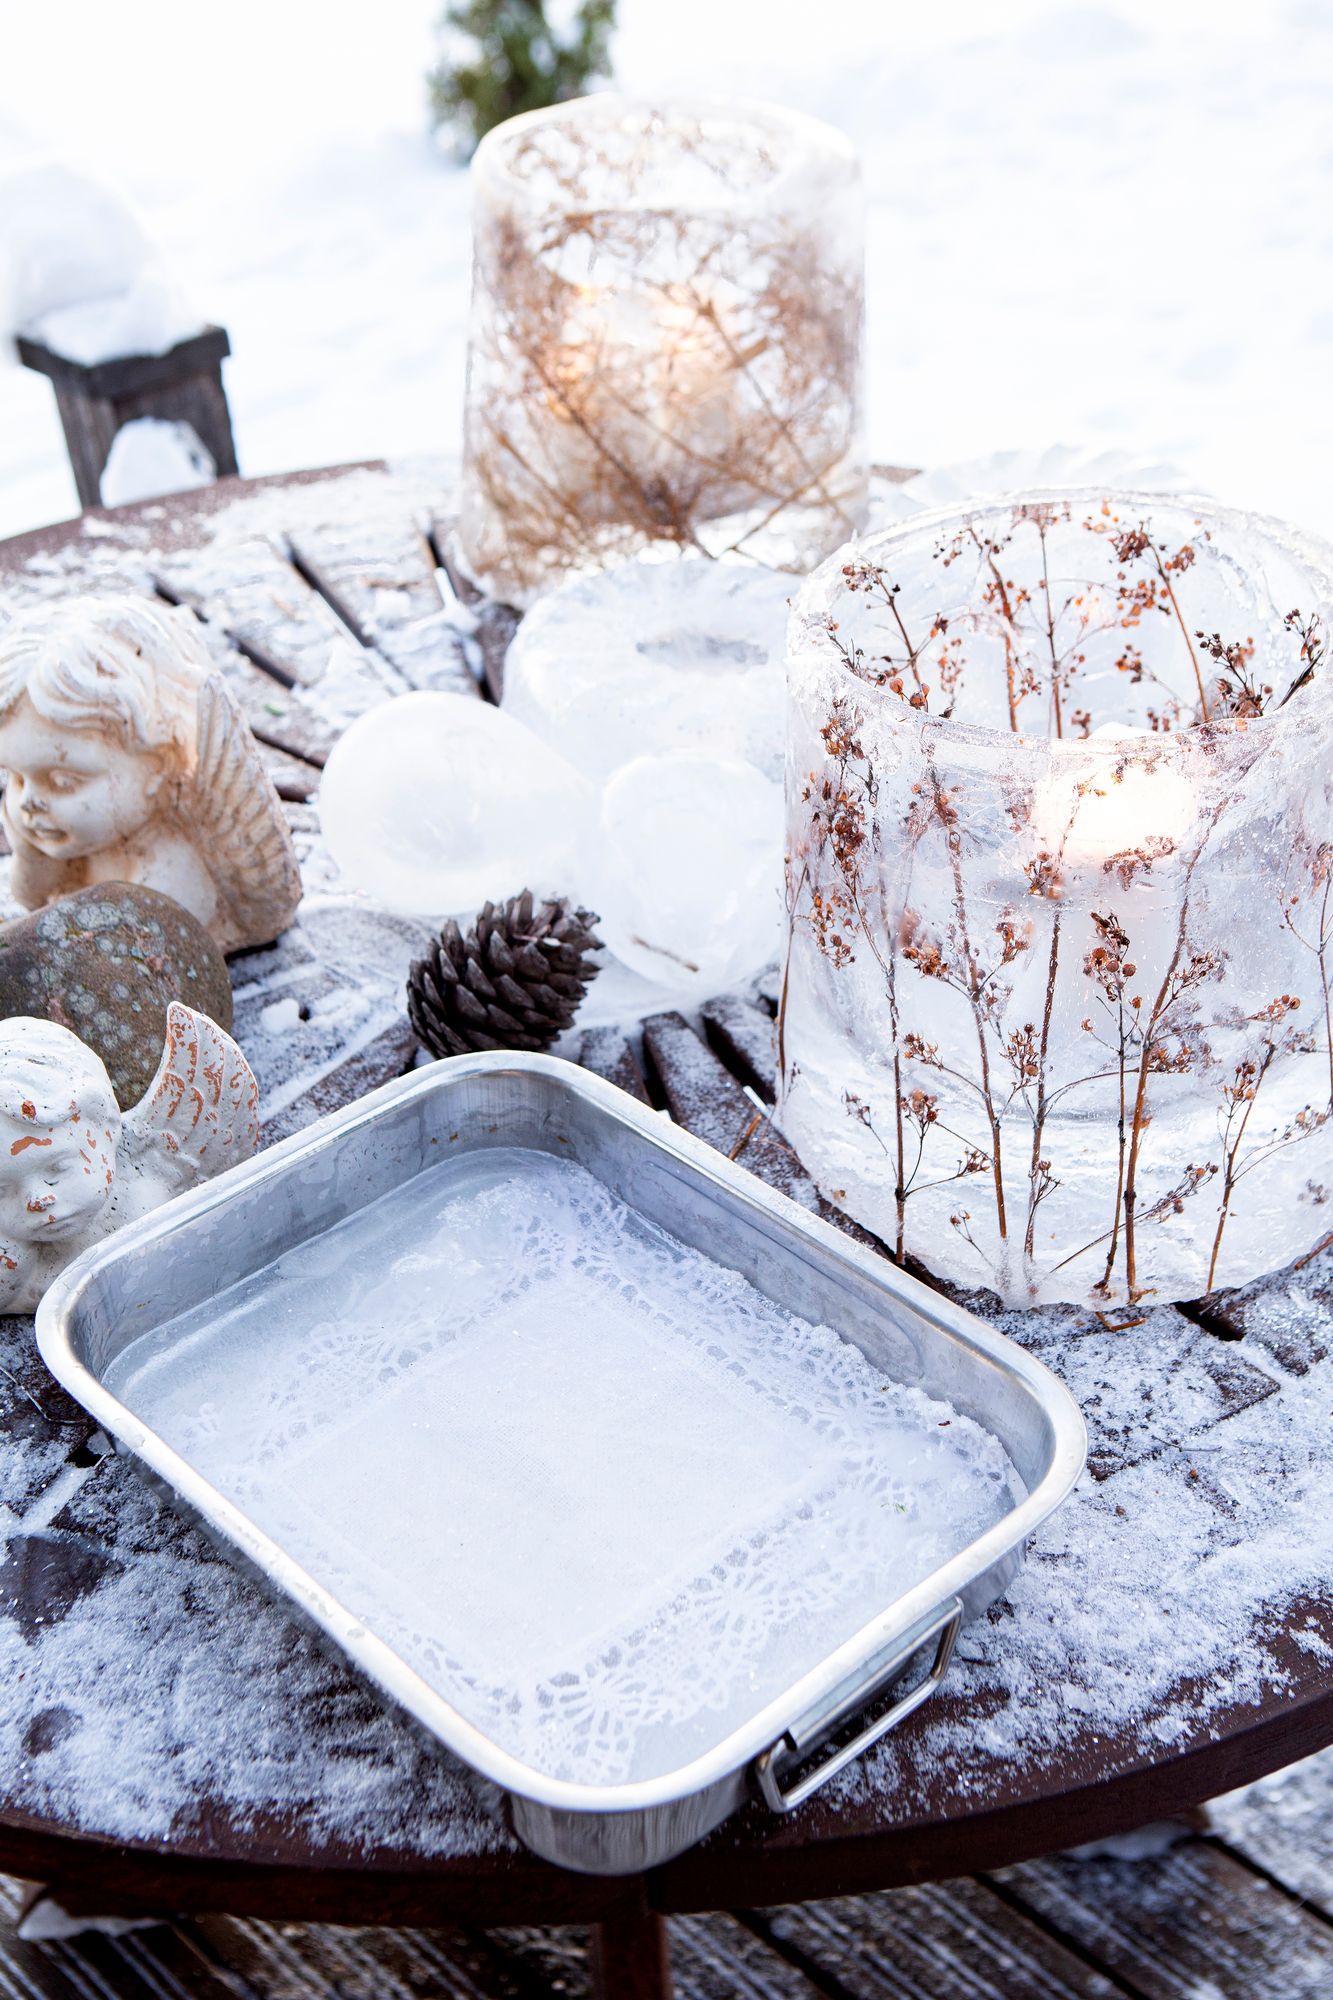 Pirjo on tehnyt kauniin jäälyhdyn kuivuneista luonnonkukista. Pakkanen jäädytti ämpärin kukat ja veden yön aikana. © Tiiu Kaitalo